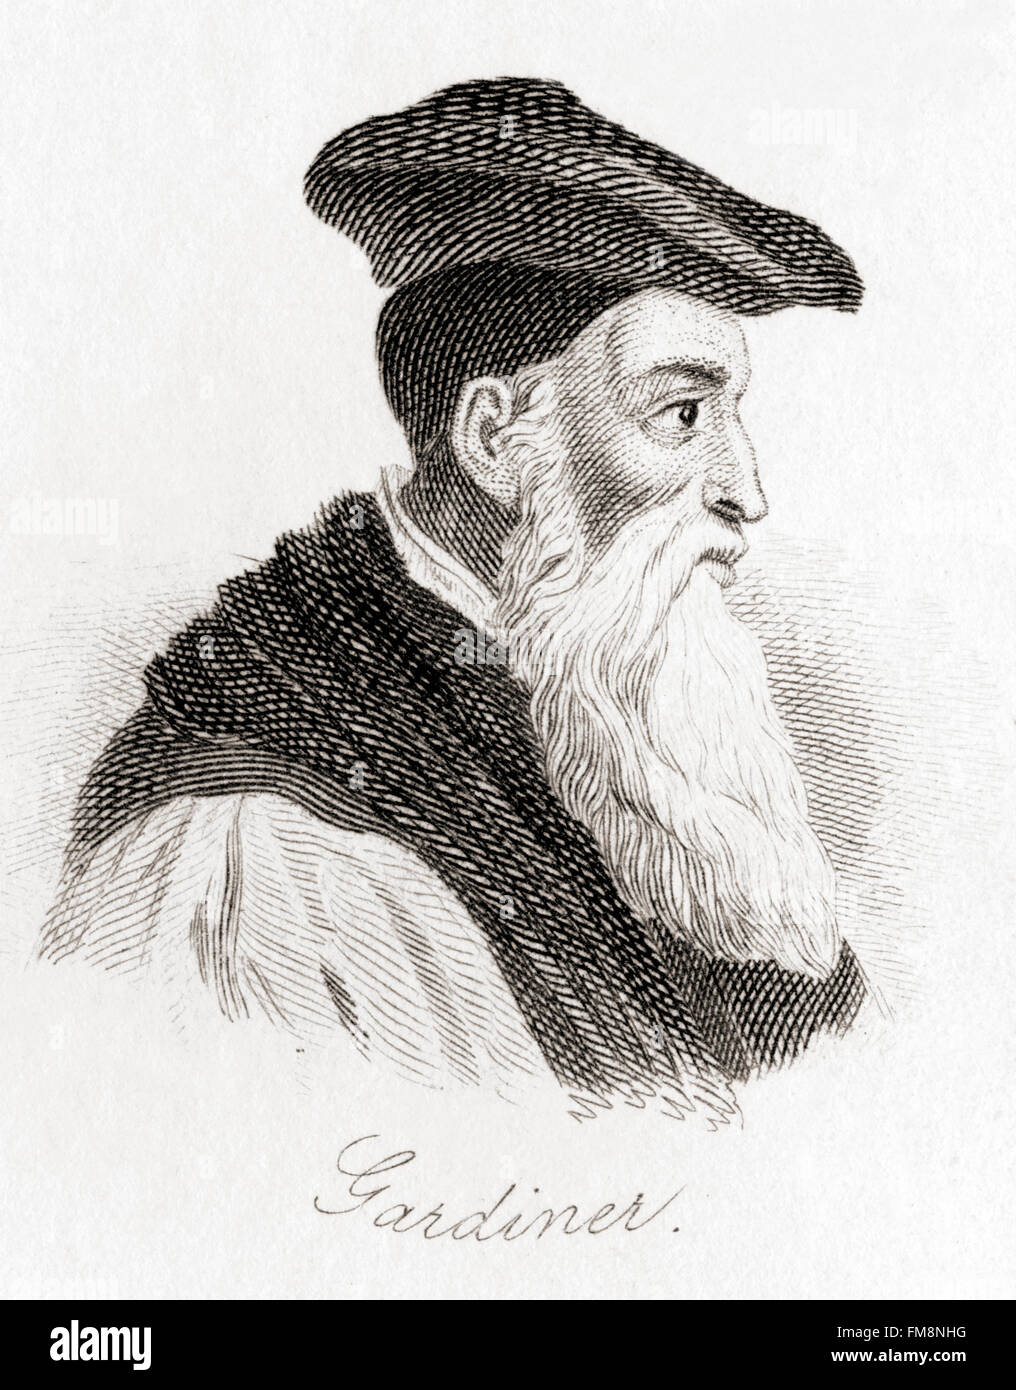 Stephen Gardiner, c. 1483 - 1555. Vescovo inglese, politico e Lord Cancelliere durante l'inglese periodo della Riforma. Foto Stock